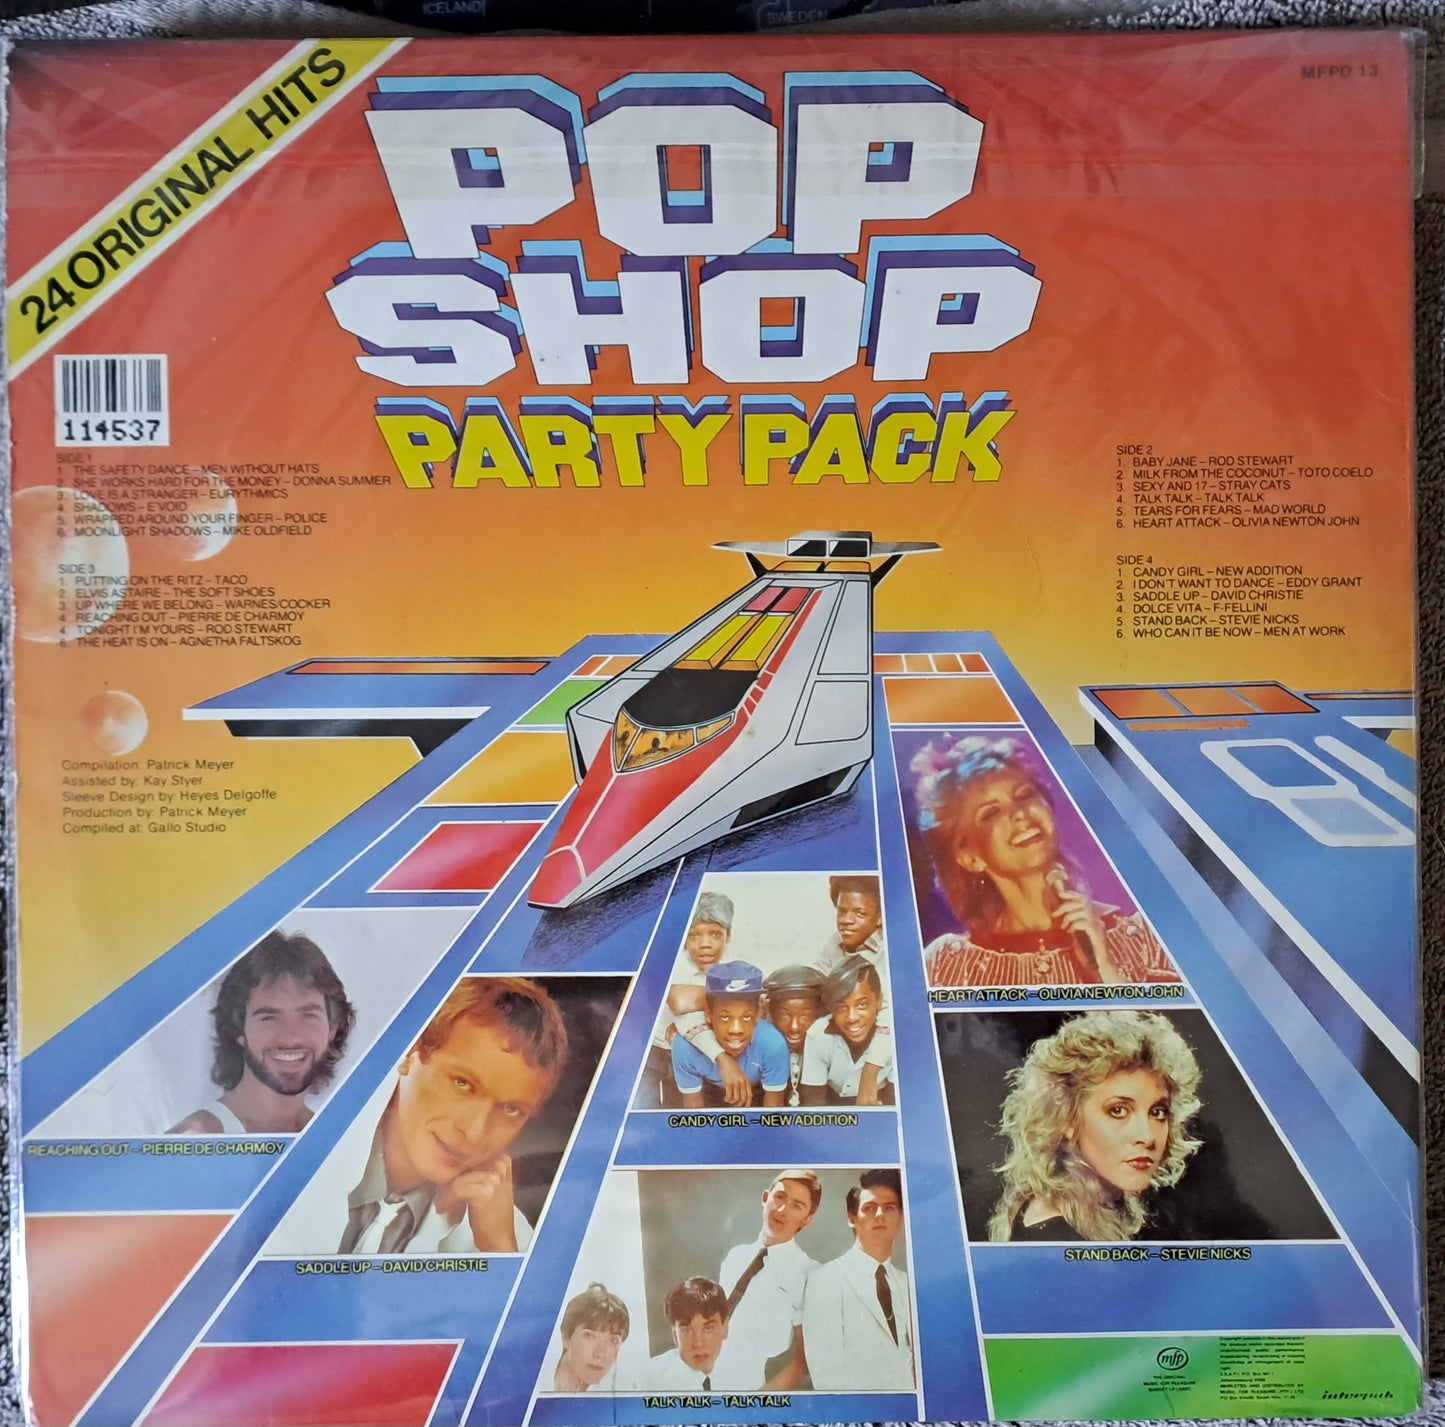 Various Artists - Pop Shop Party Pack Vol. 1